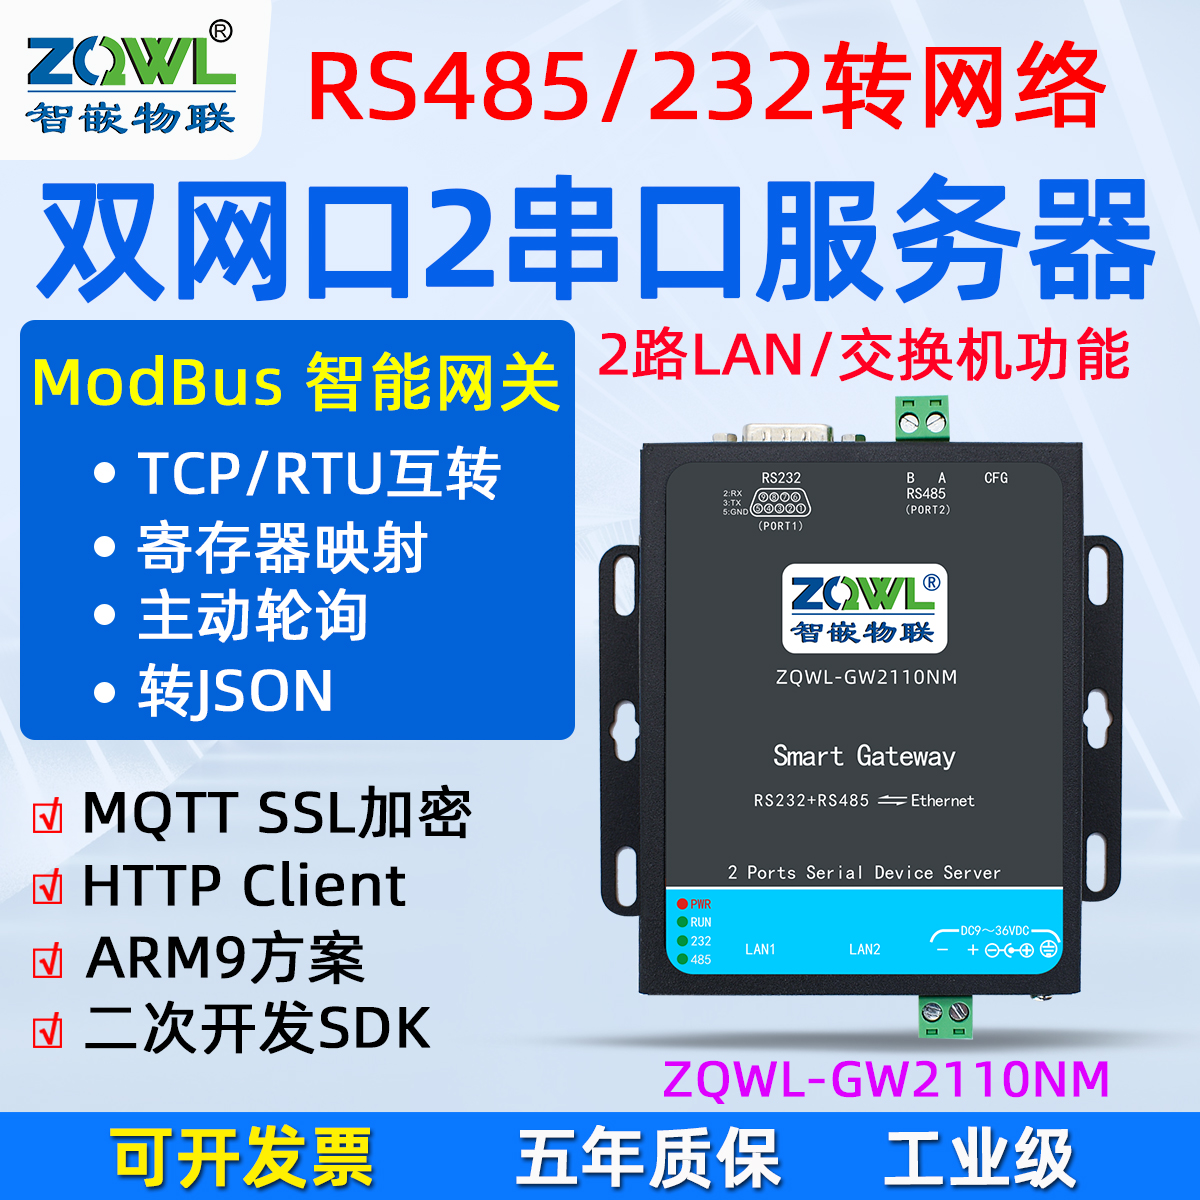 交換機功RS485/232串口服務器ZQWL-GW2110NM